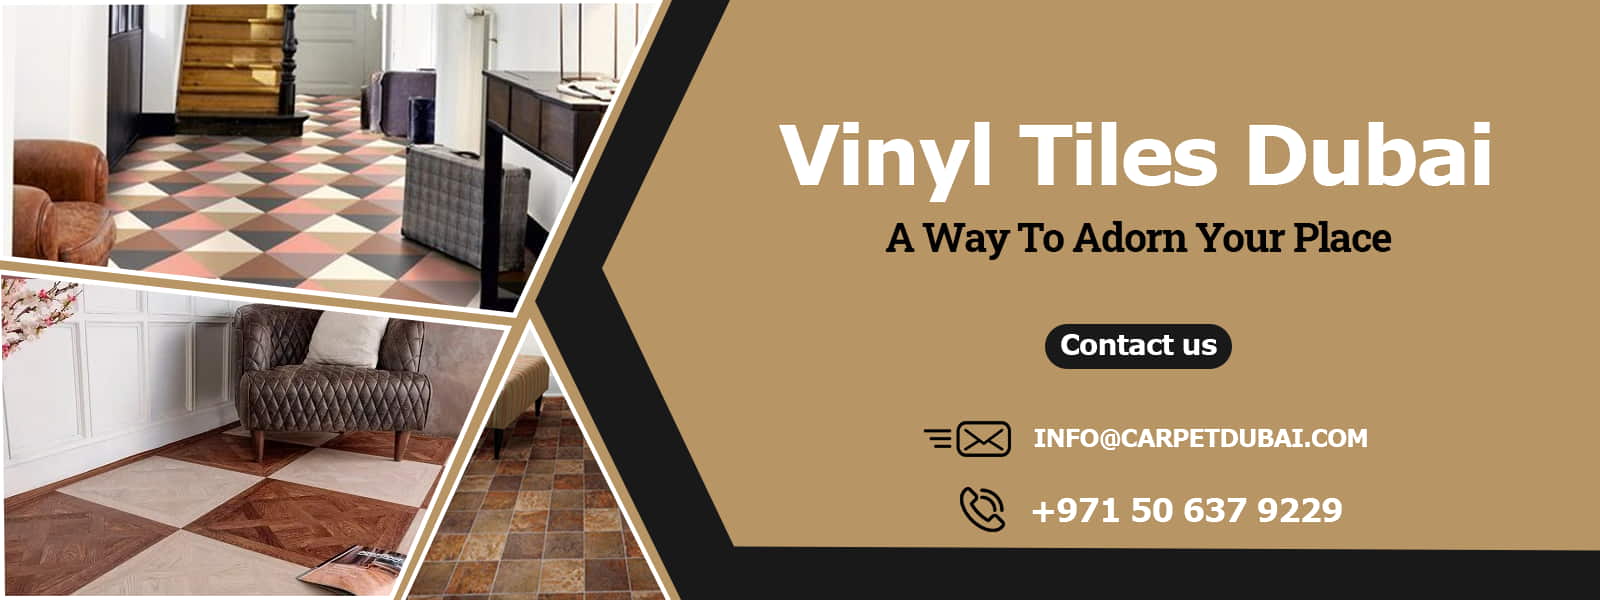 Vinyl-Tiles-Dubai banner